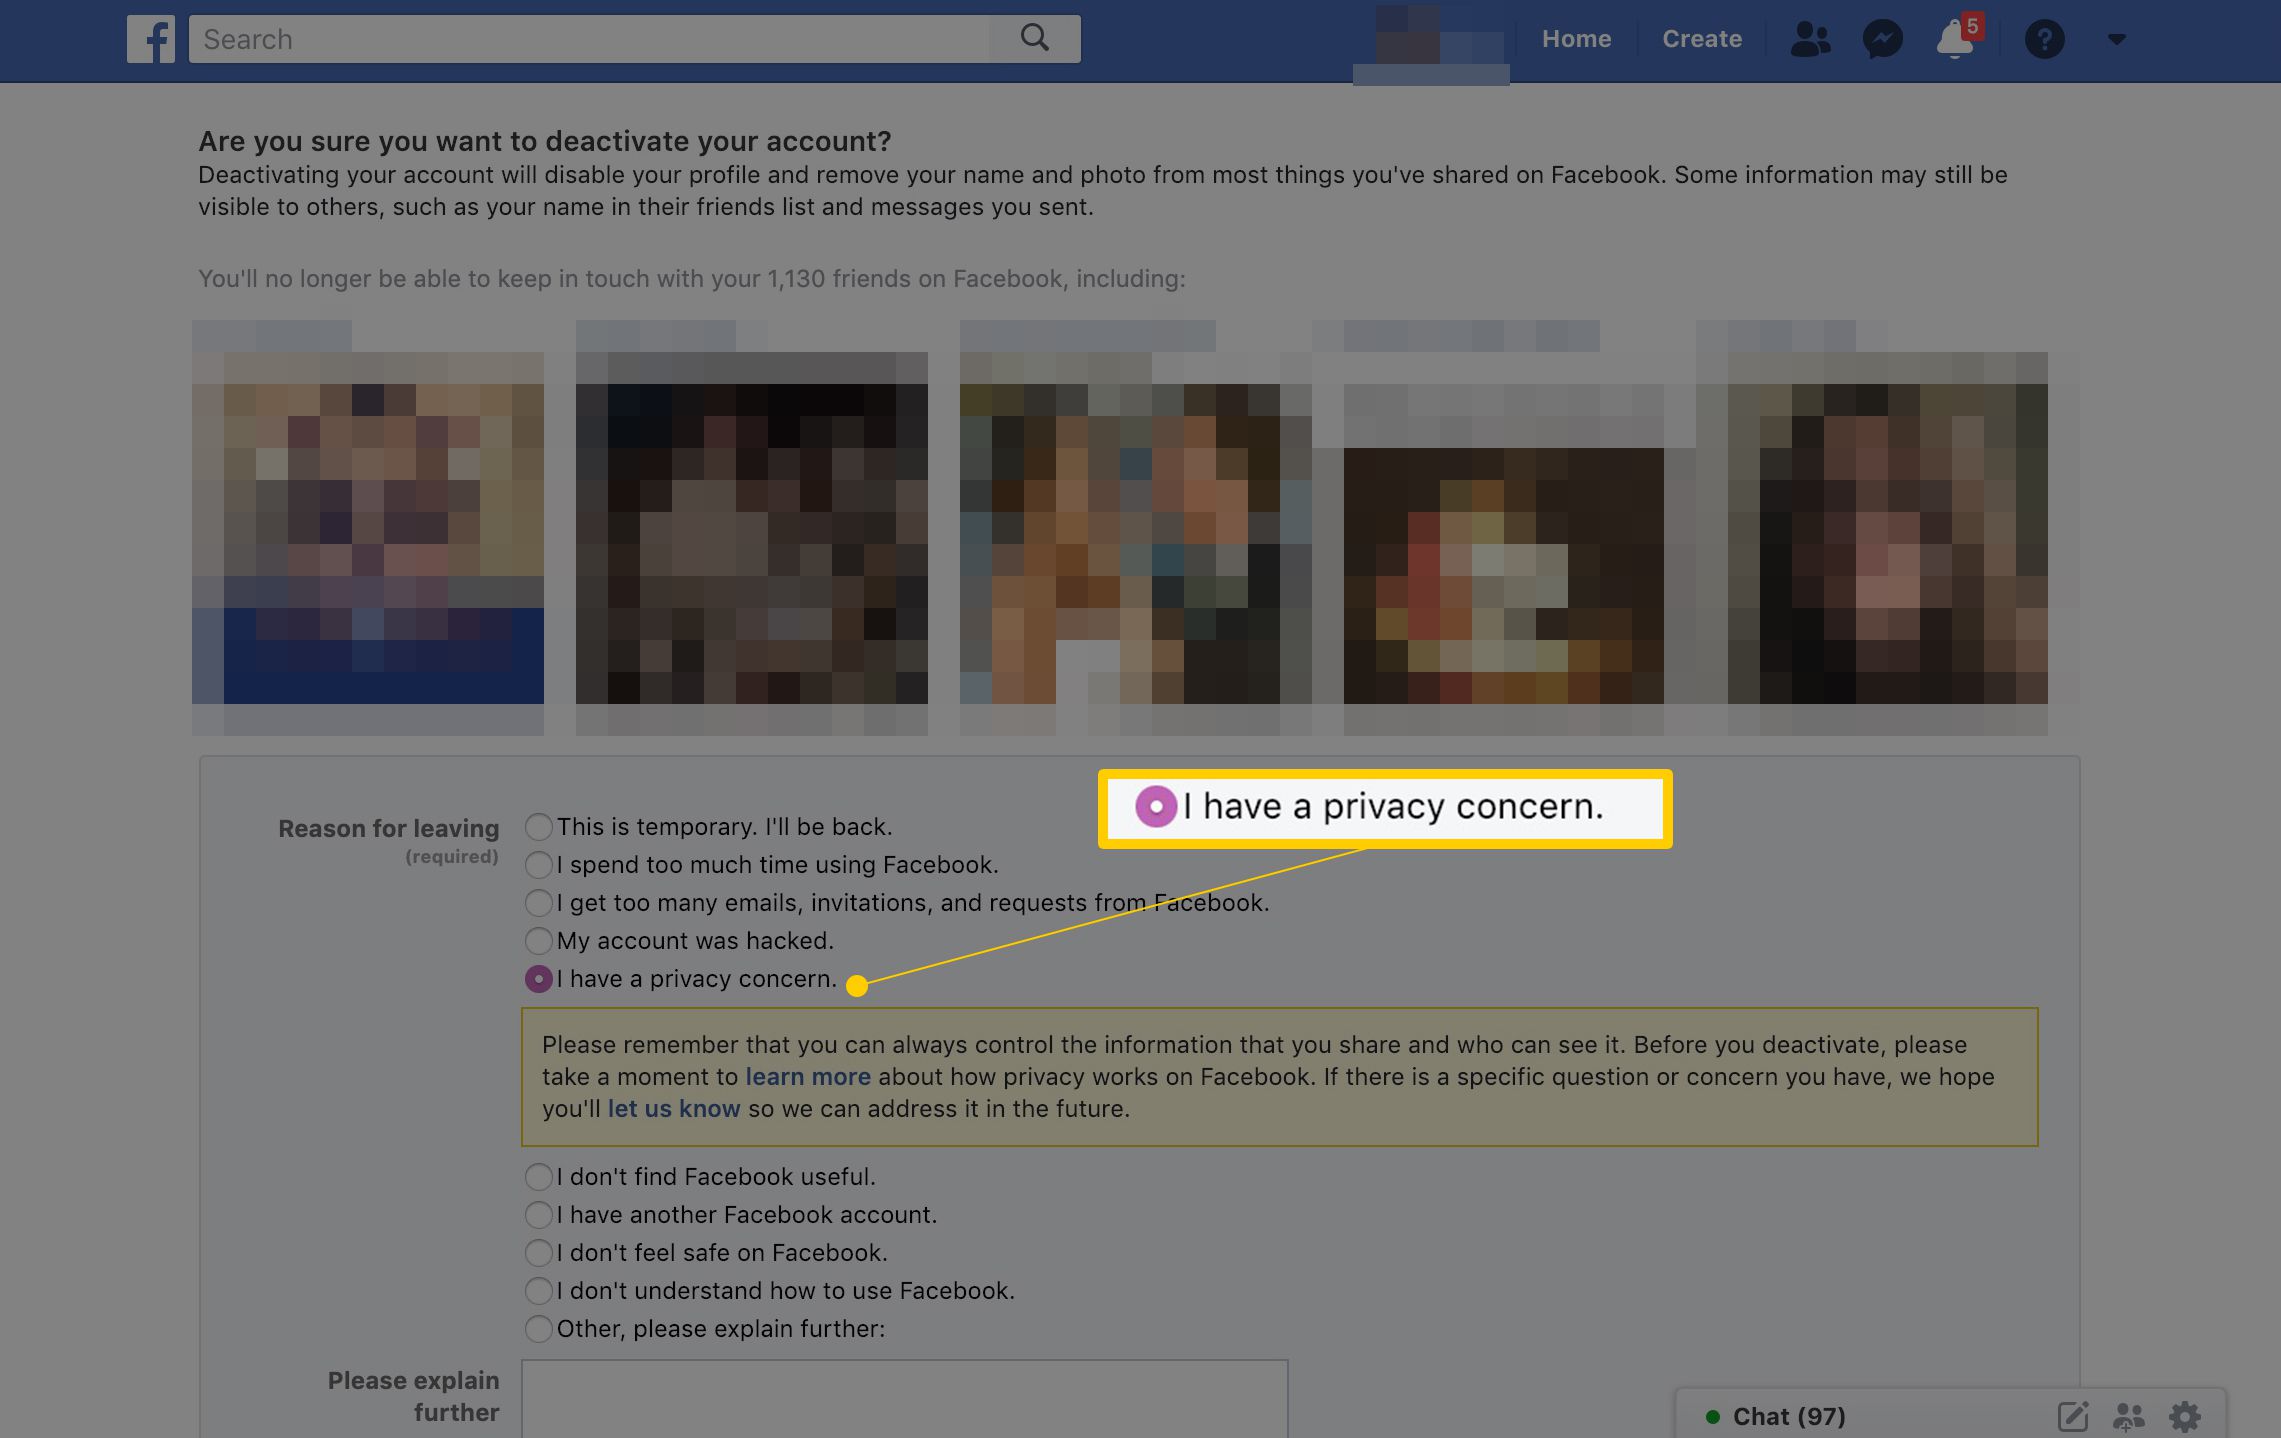 Na Facebooku mám důvod k obavám o soukromí